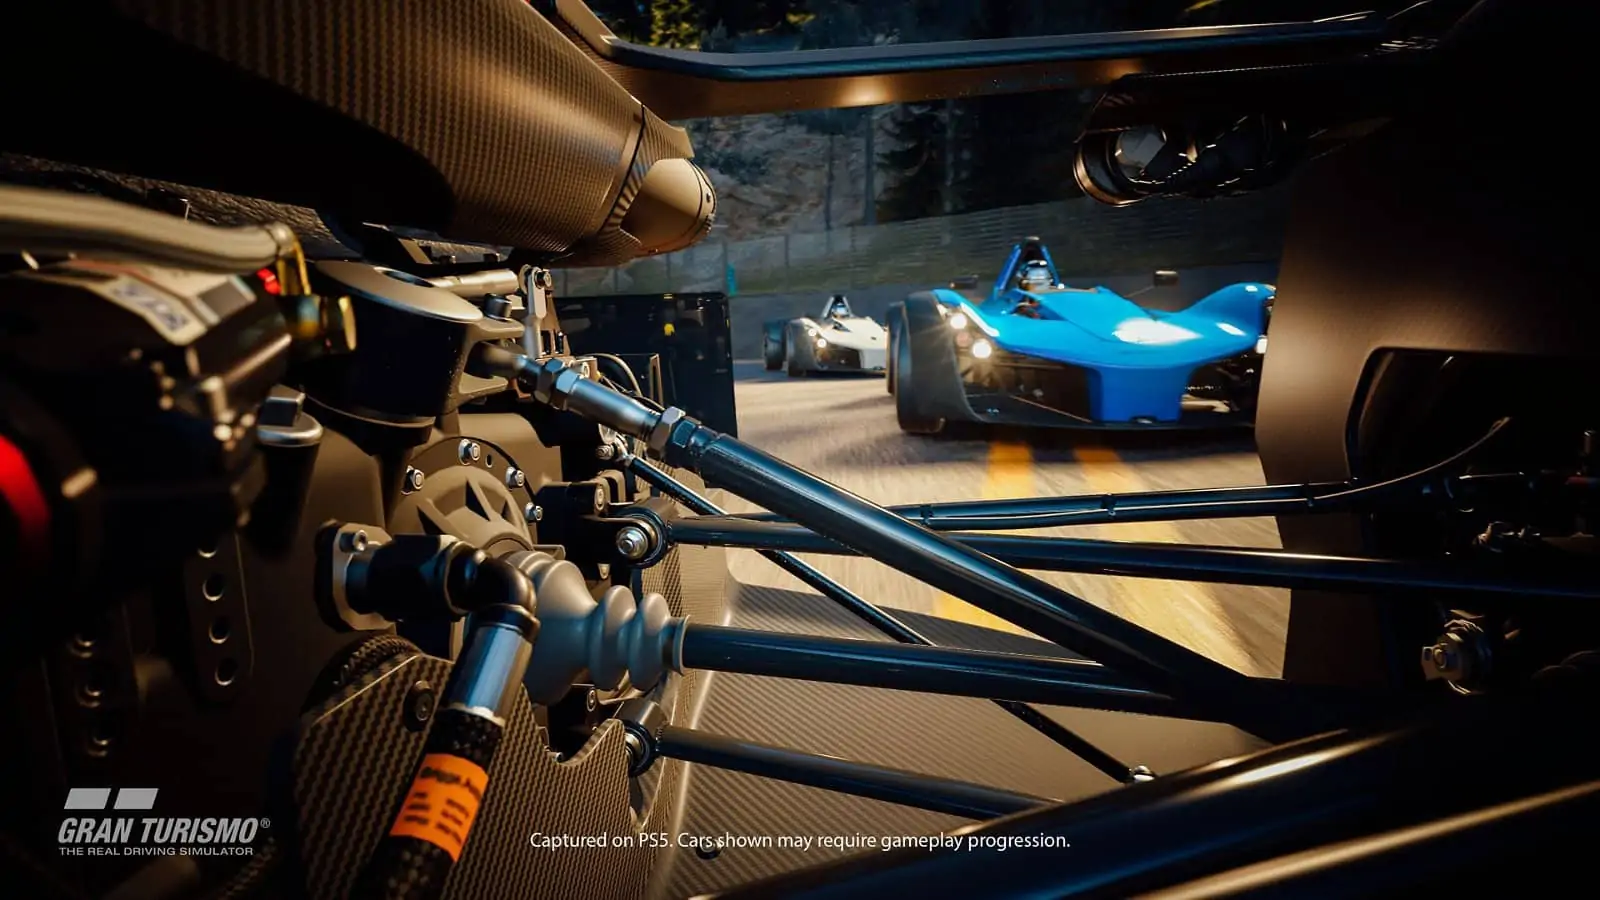 PlayStation State of Play: Sony анонсировала специальный выпуск, посвященный Gran Turismo 7